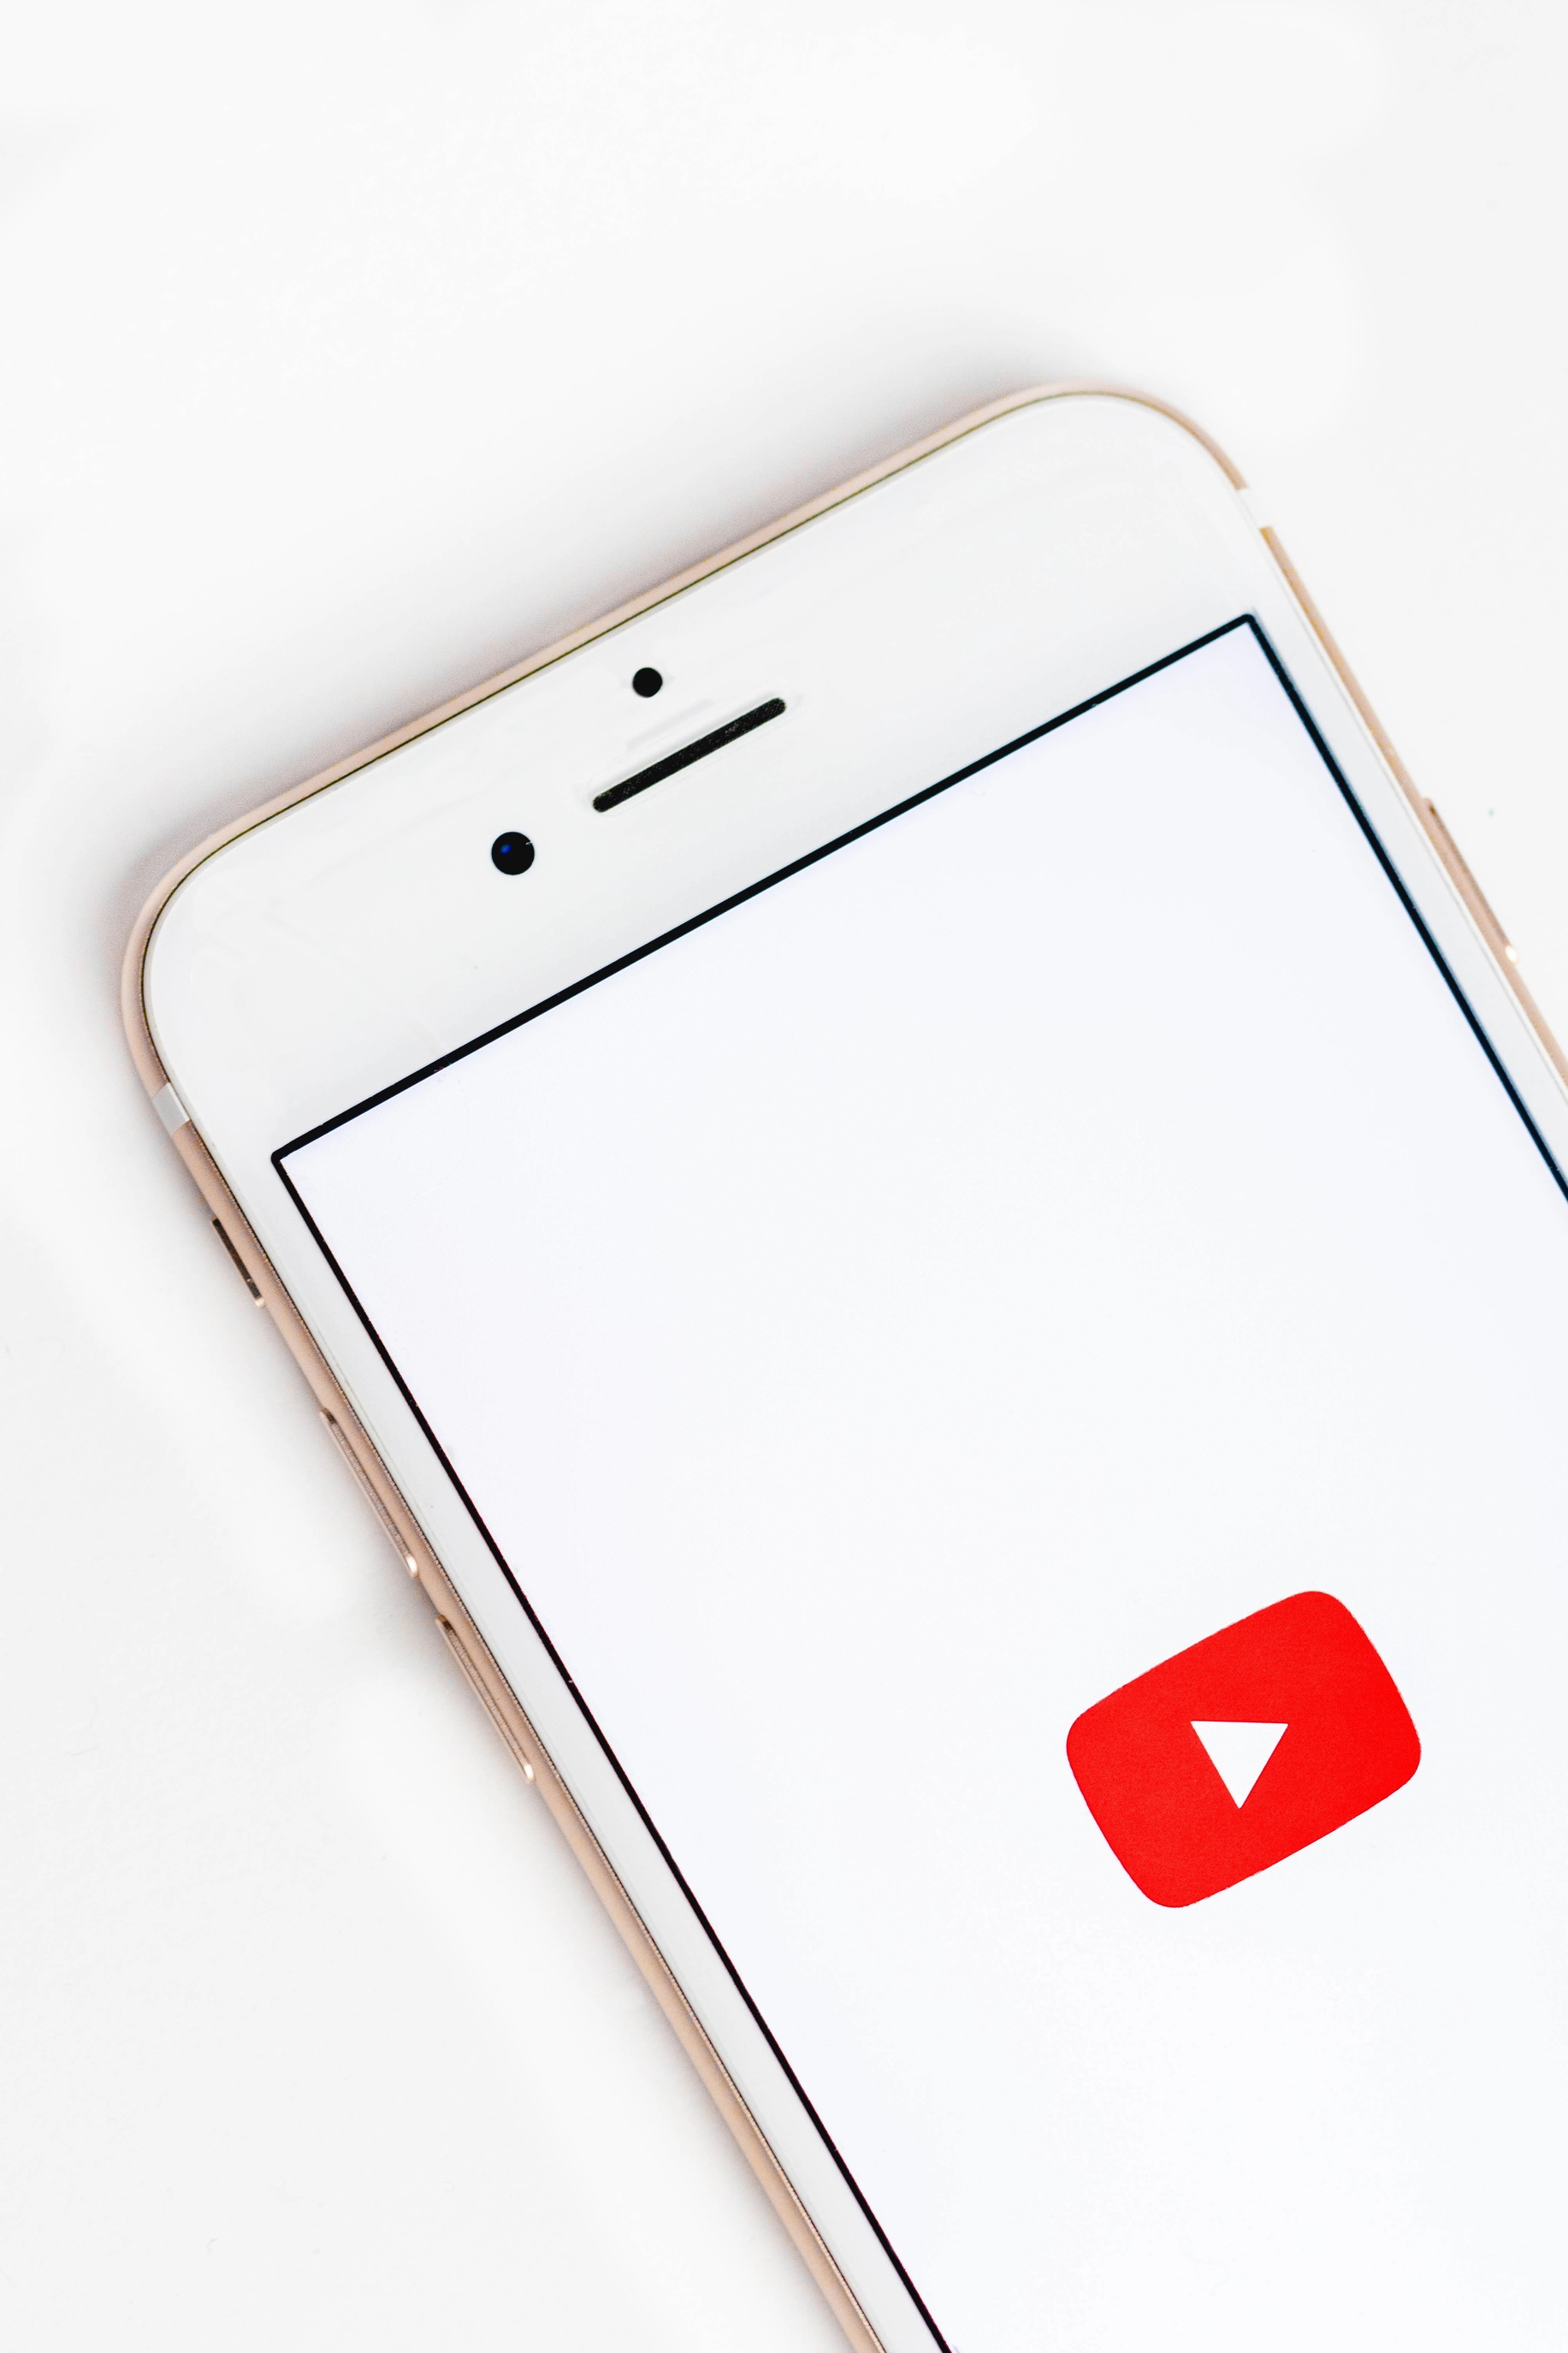 В YouTube появится диалог с ИИ о воспроизводимом контенте и темы для комментариев